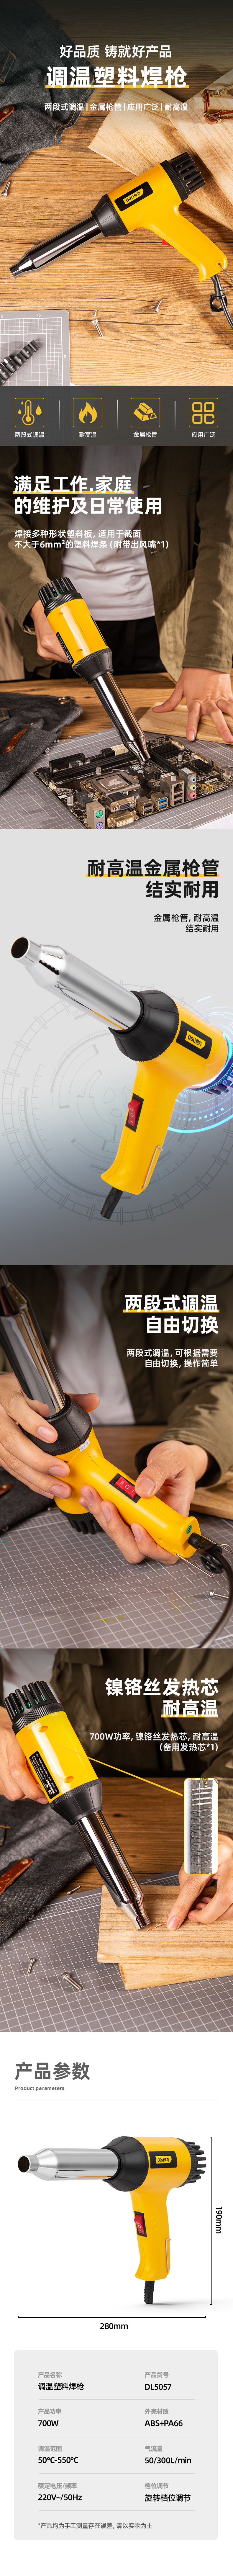 得力工具 DL5057 塑料焊枪(黄)-700W